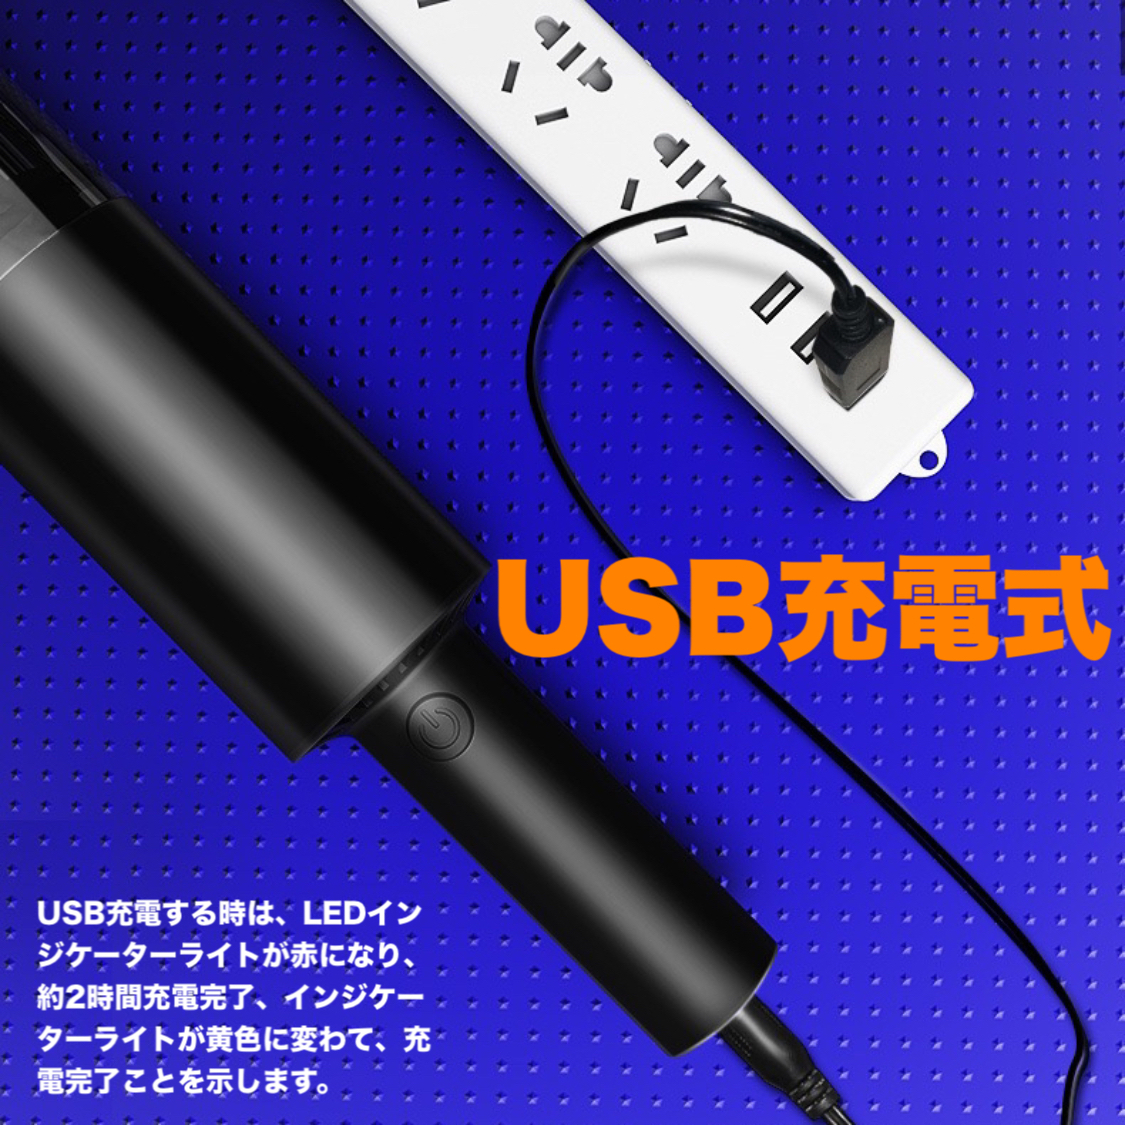 [B201- новый автомобильный пылесос чёрный ] портативный очиститель супер-легкий маленький размер автомобильный пылесос портативный беспроводной заряжающийся 9500PA всасывание сила USB зарядка портативный пылесос 